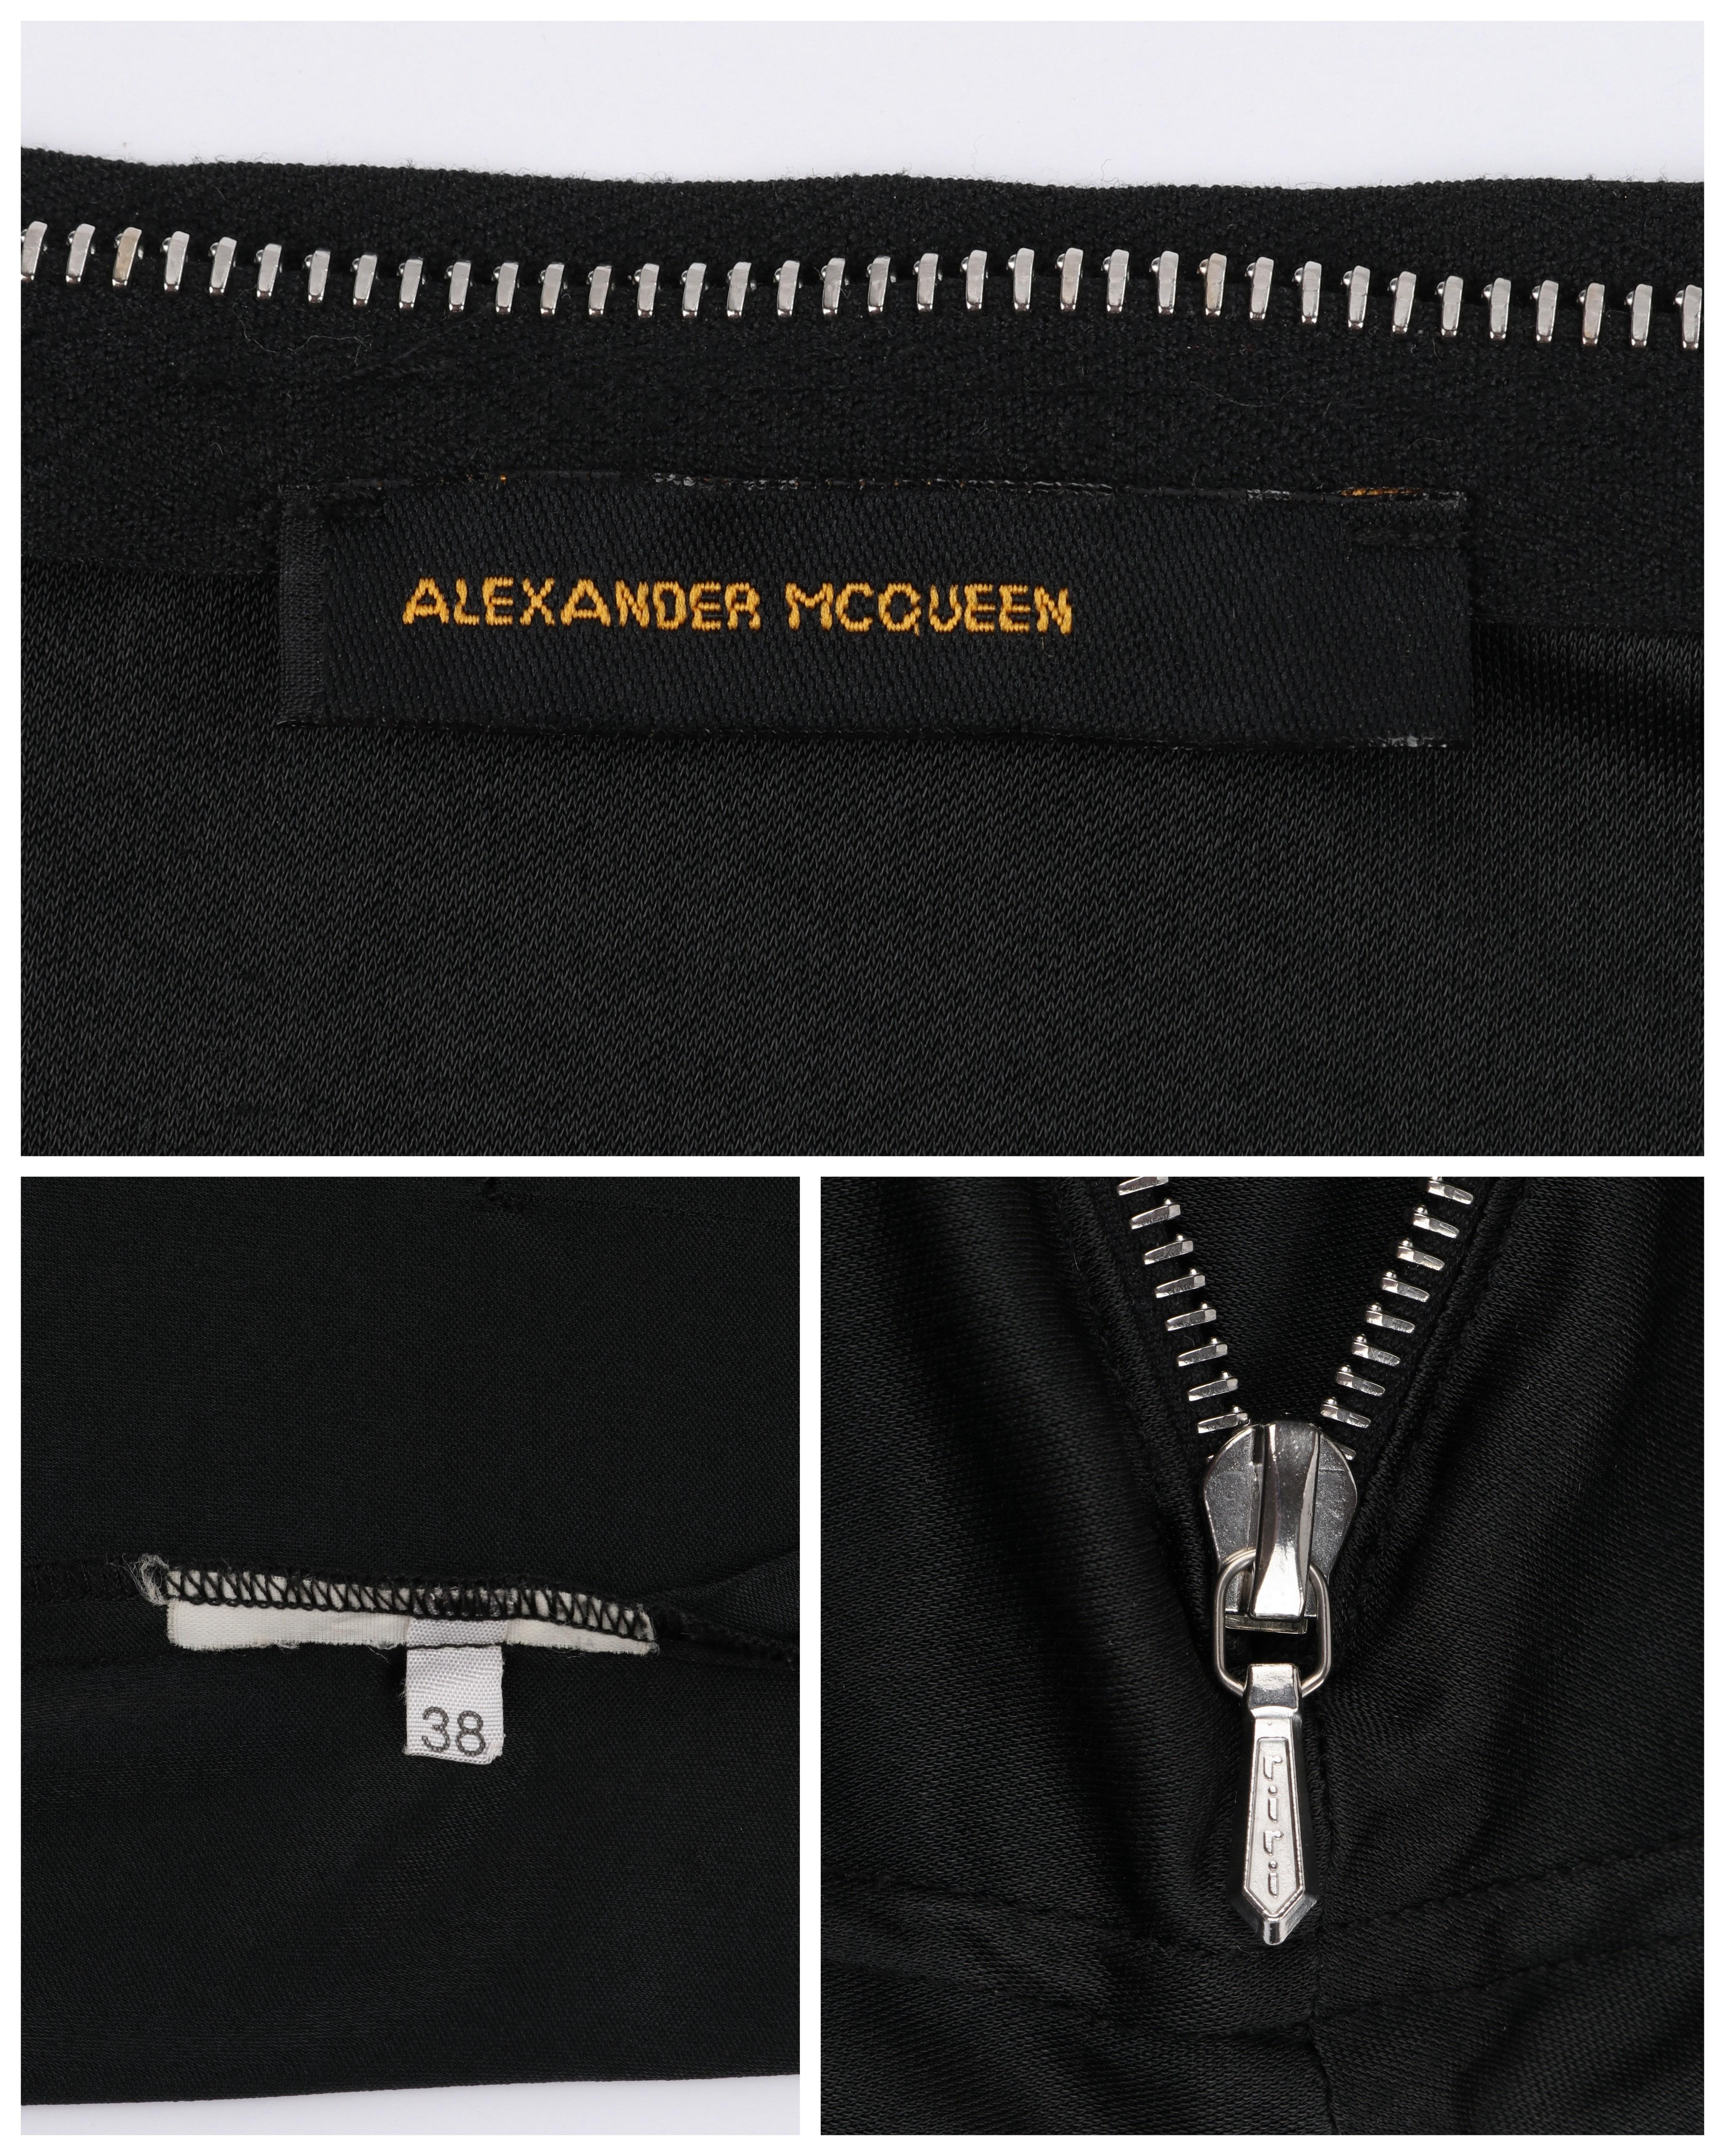 ALEXANDER McQUEEN S/S 1997 